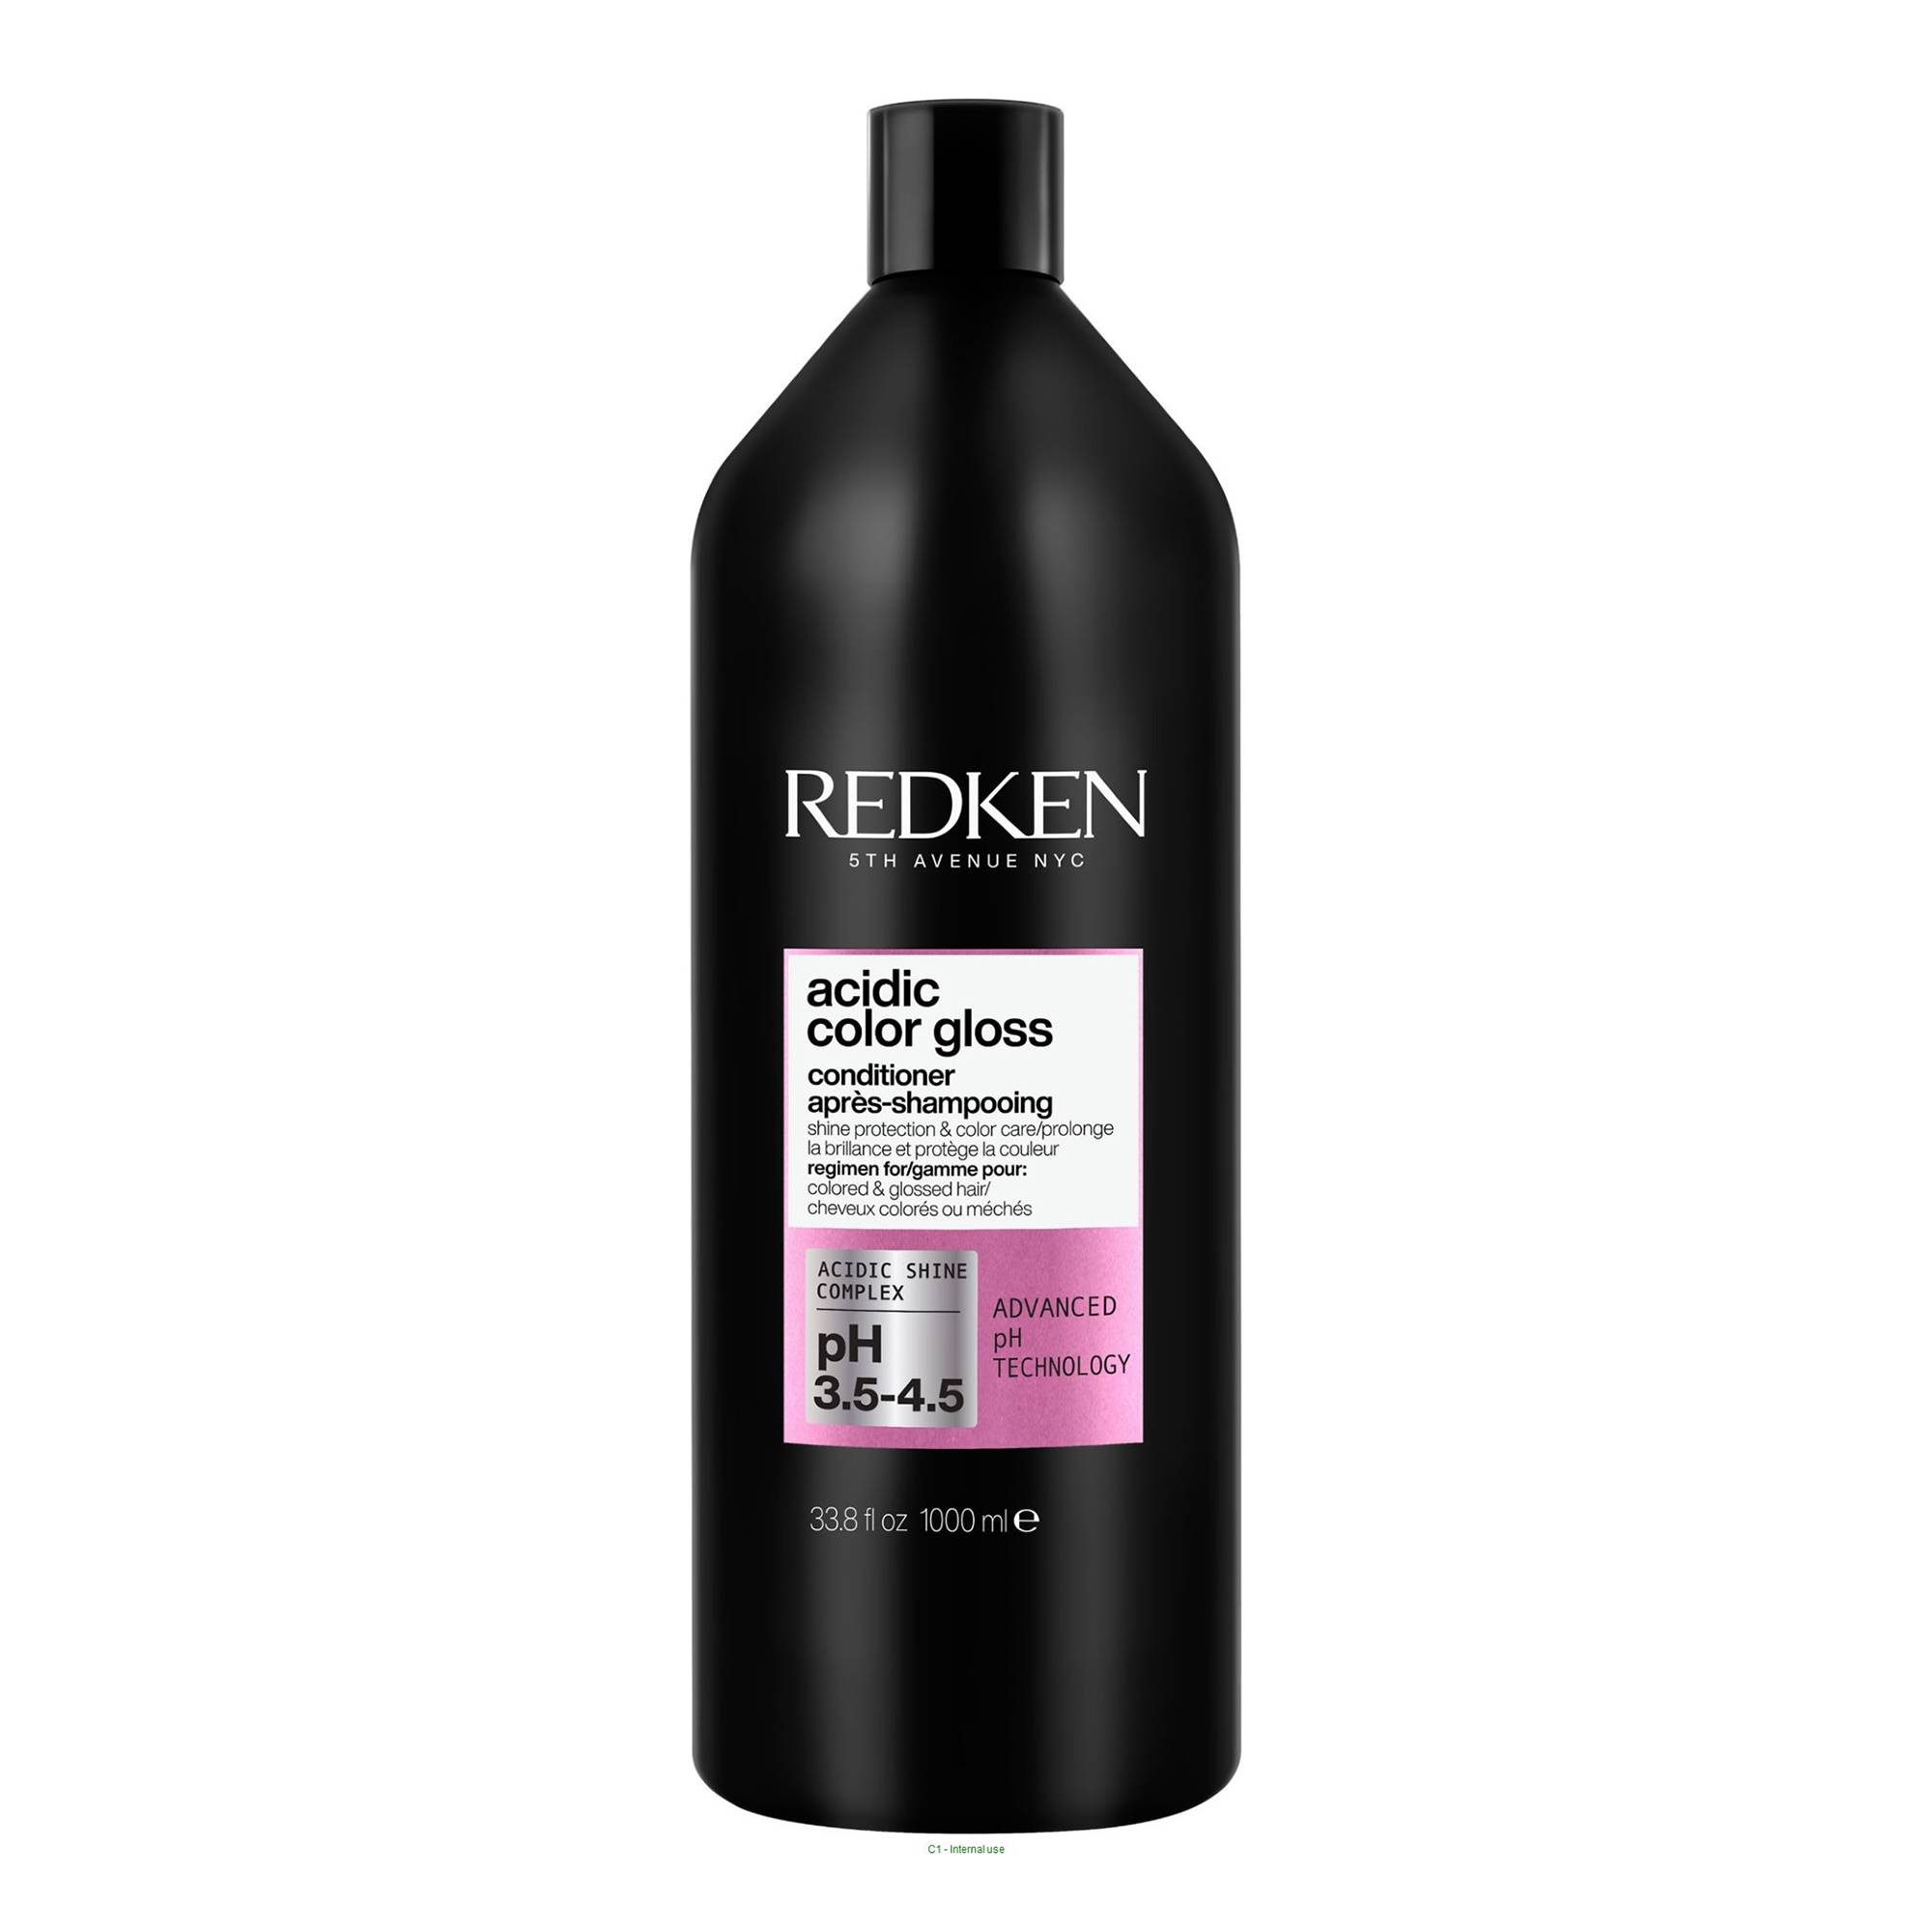 Après-shampoing nourrissant Acidic Color Gloss de la marque Redken Contenance 1000ml - 1